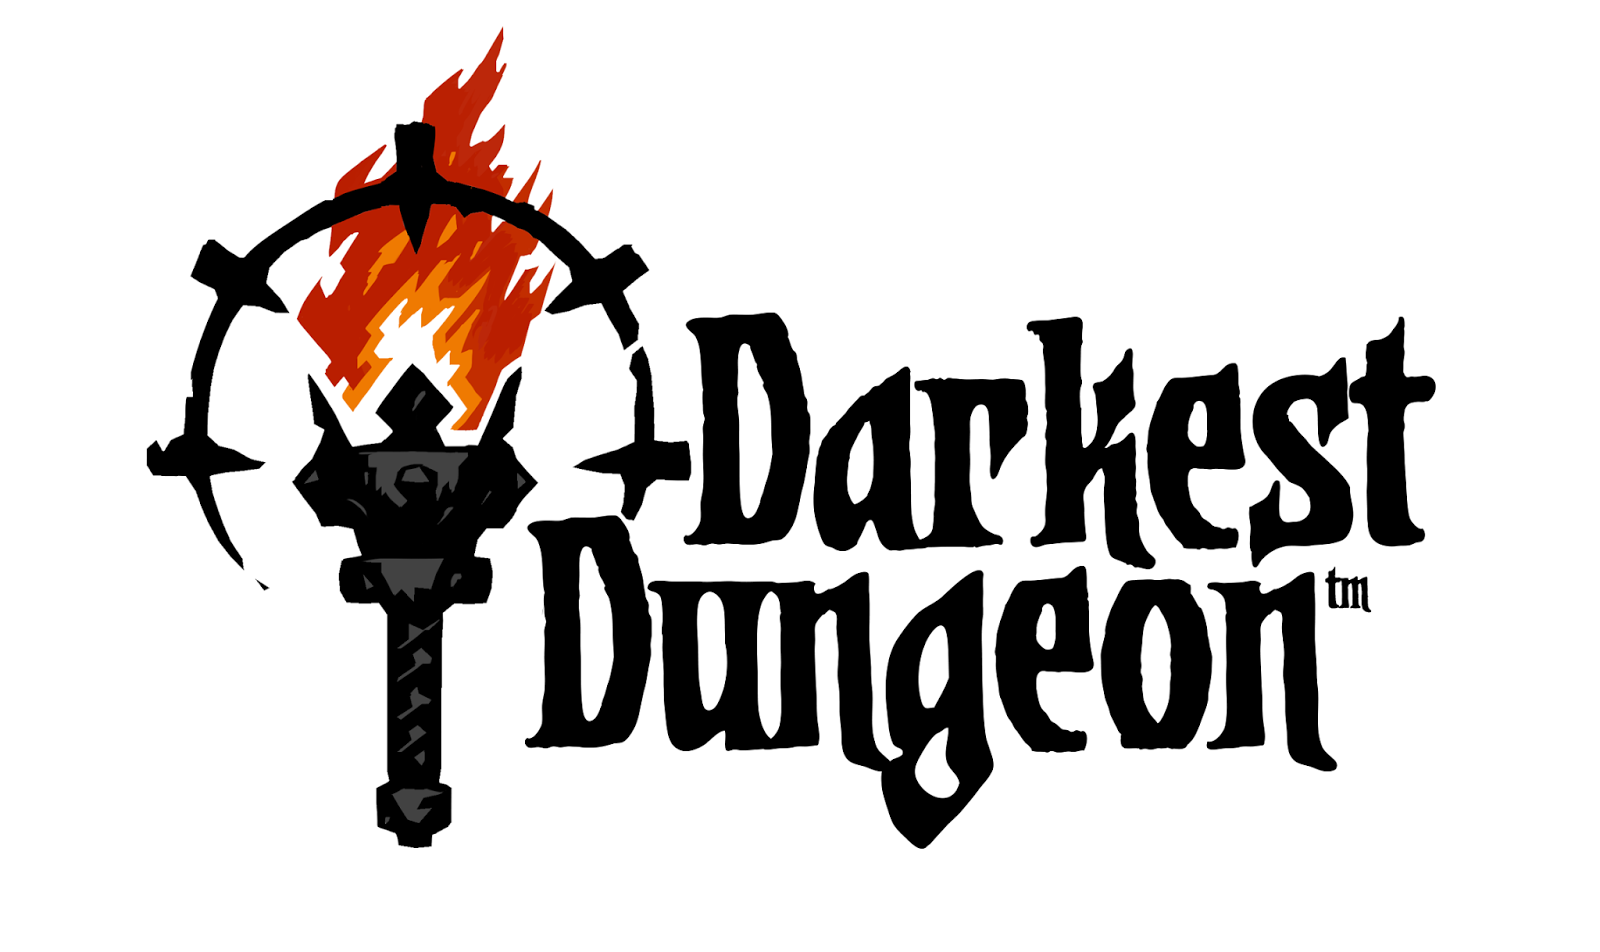 Darkest dungeon steam downloader фото 56